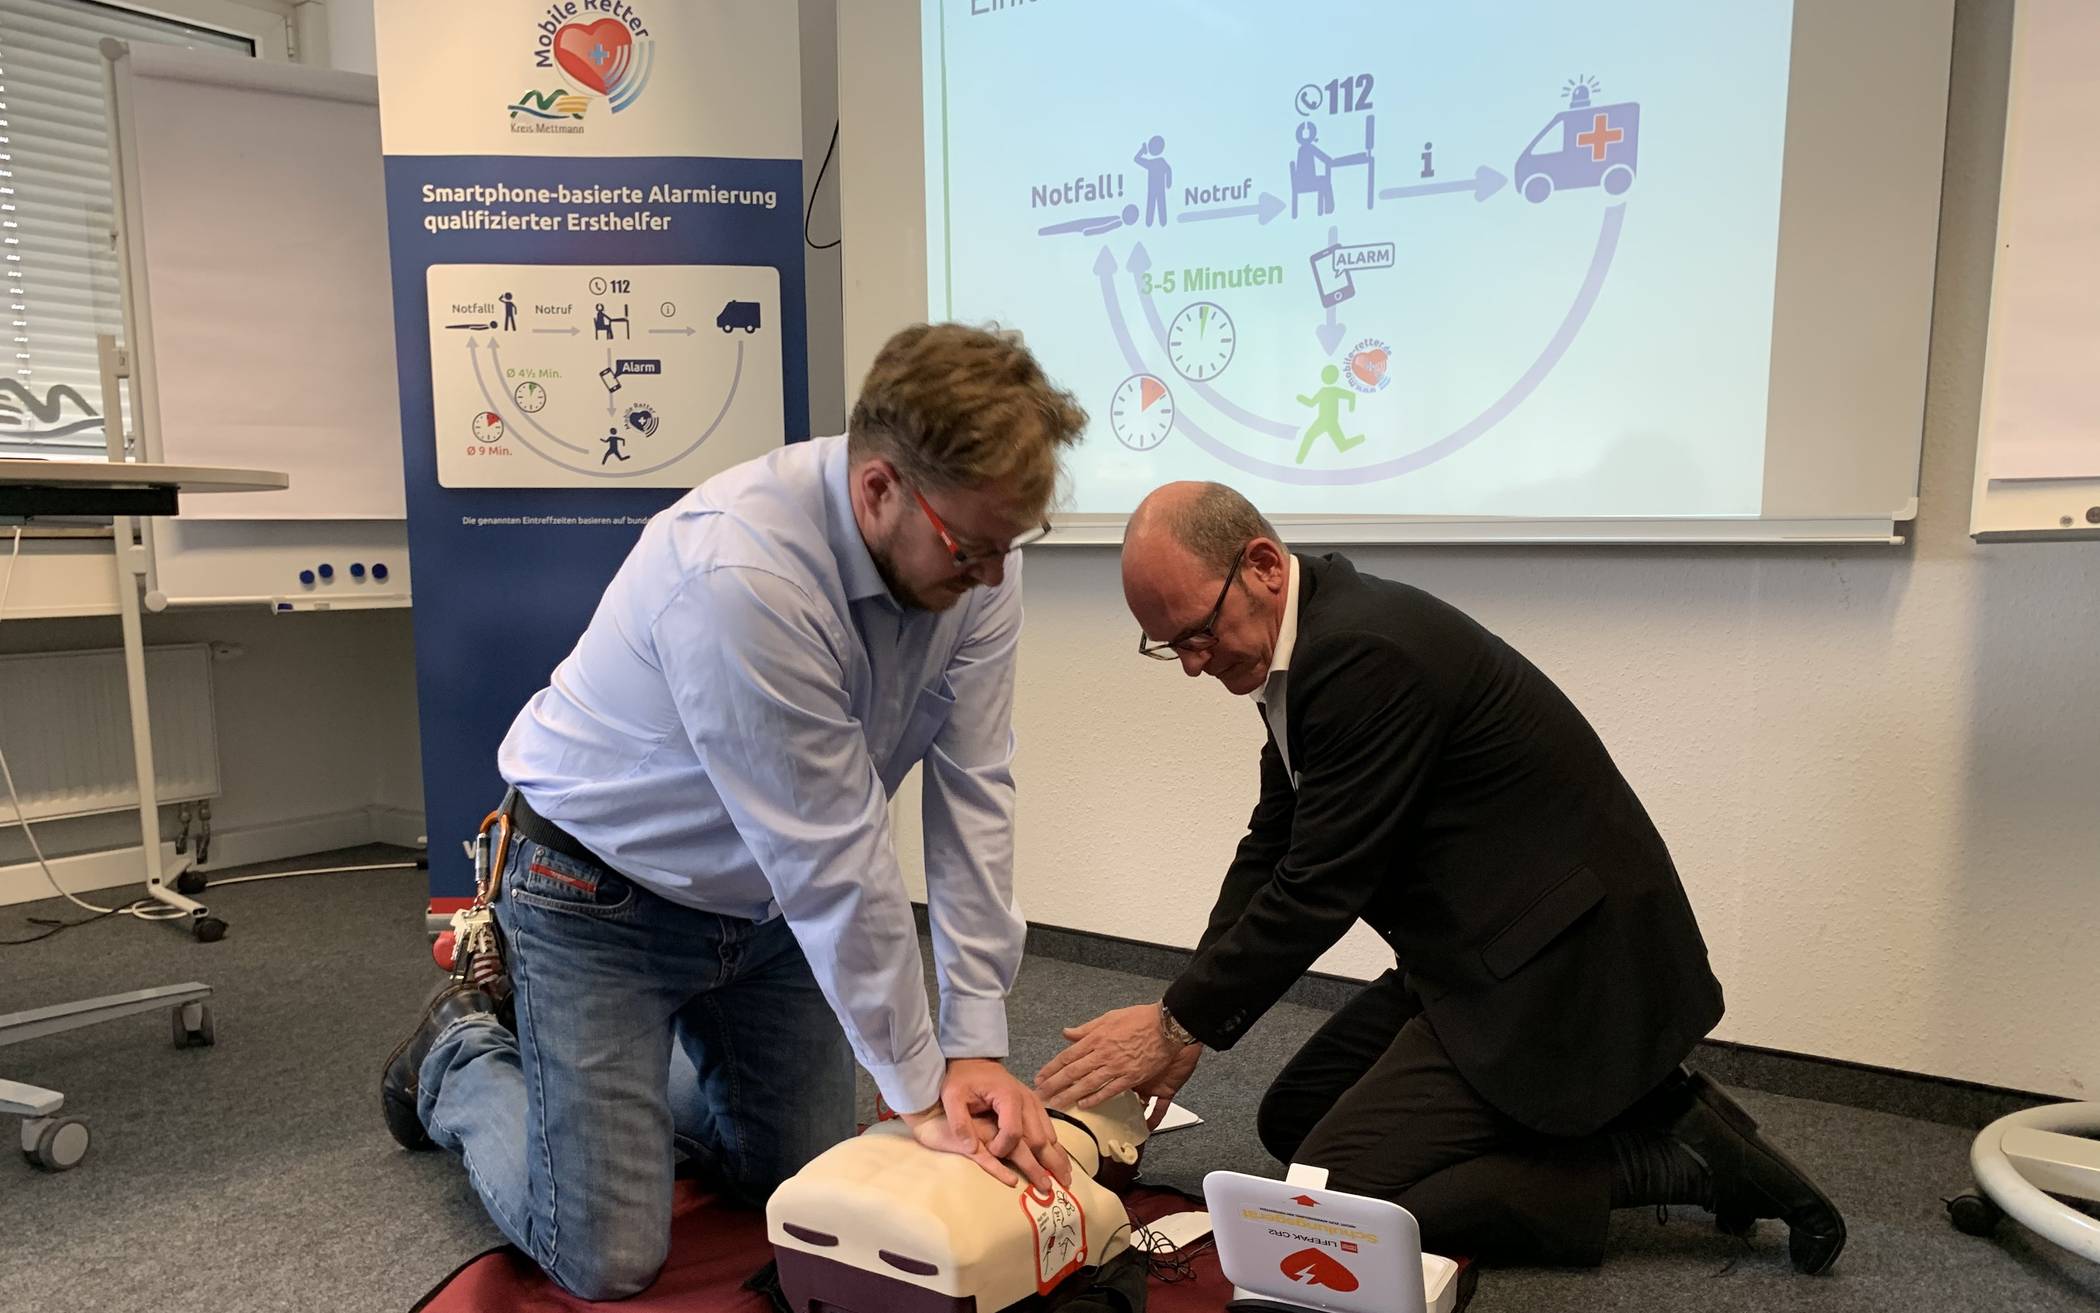  Bastian Etti von der Bildungsakademie und der ärztliche Leiter des Rettungsdienstes, Dr. Arne Köster, demonstrieren die Wiederbelebung mittels Herzdruckmassage. 